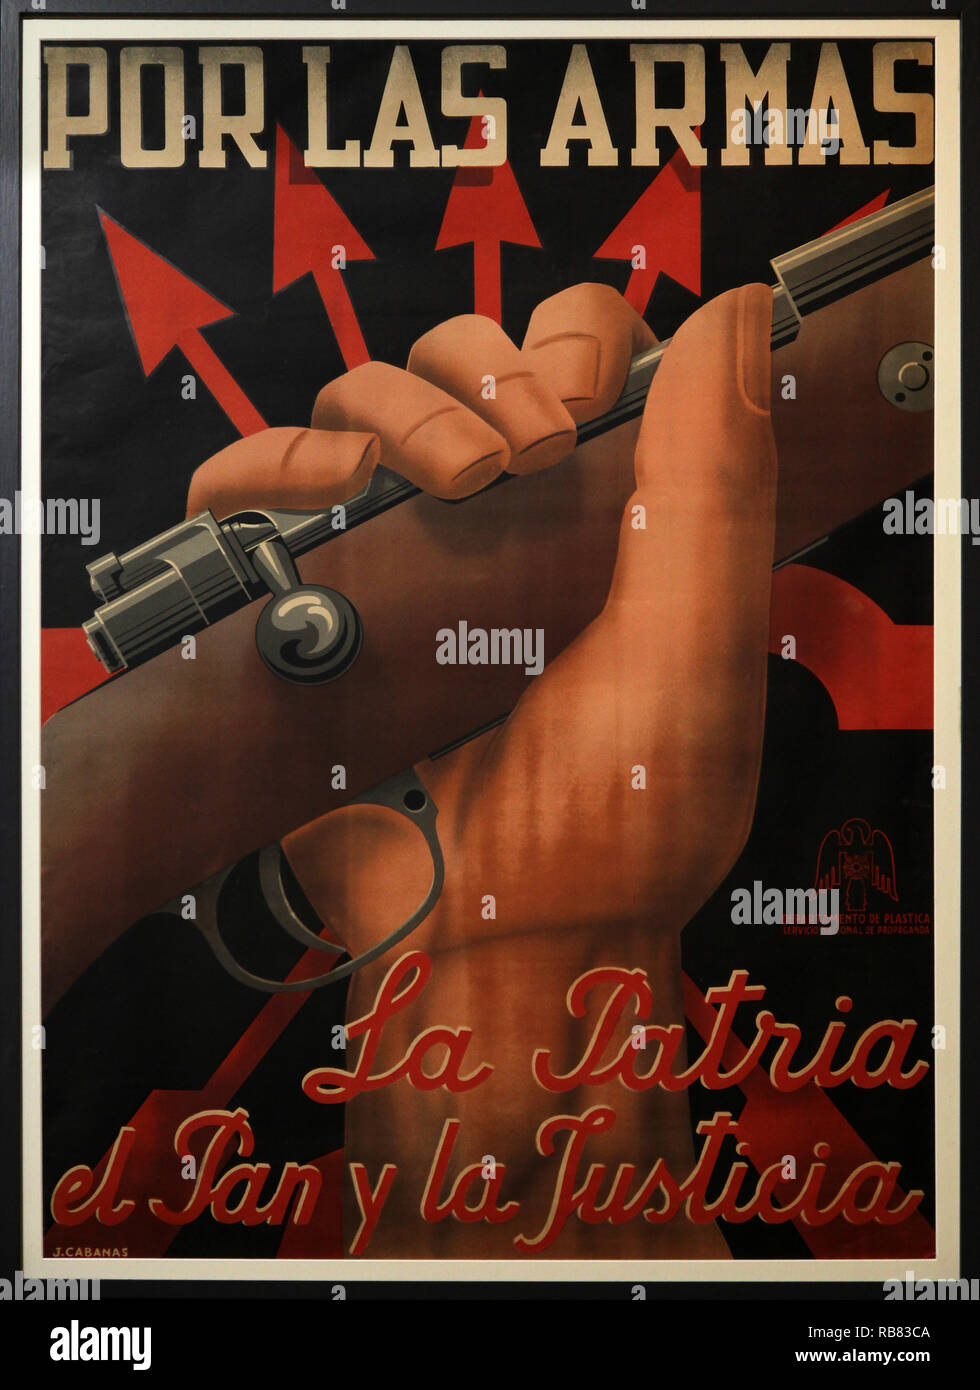 Poster Falangism Por las Armas.La Patria el Pan y la Justicia Foto Stock